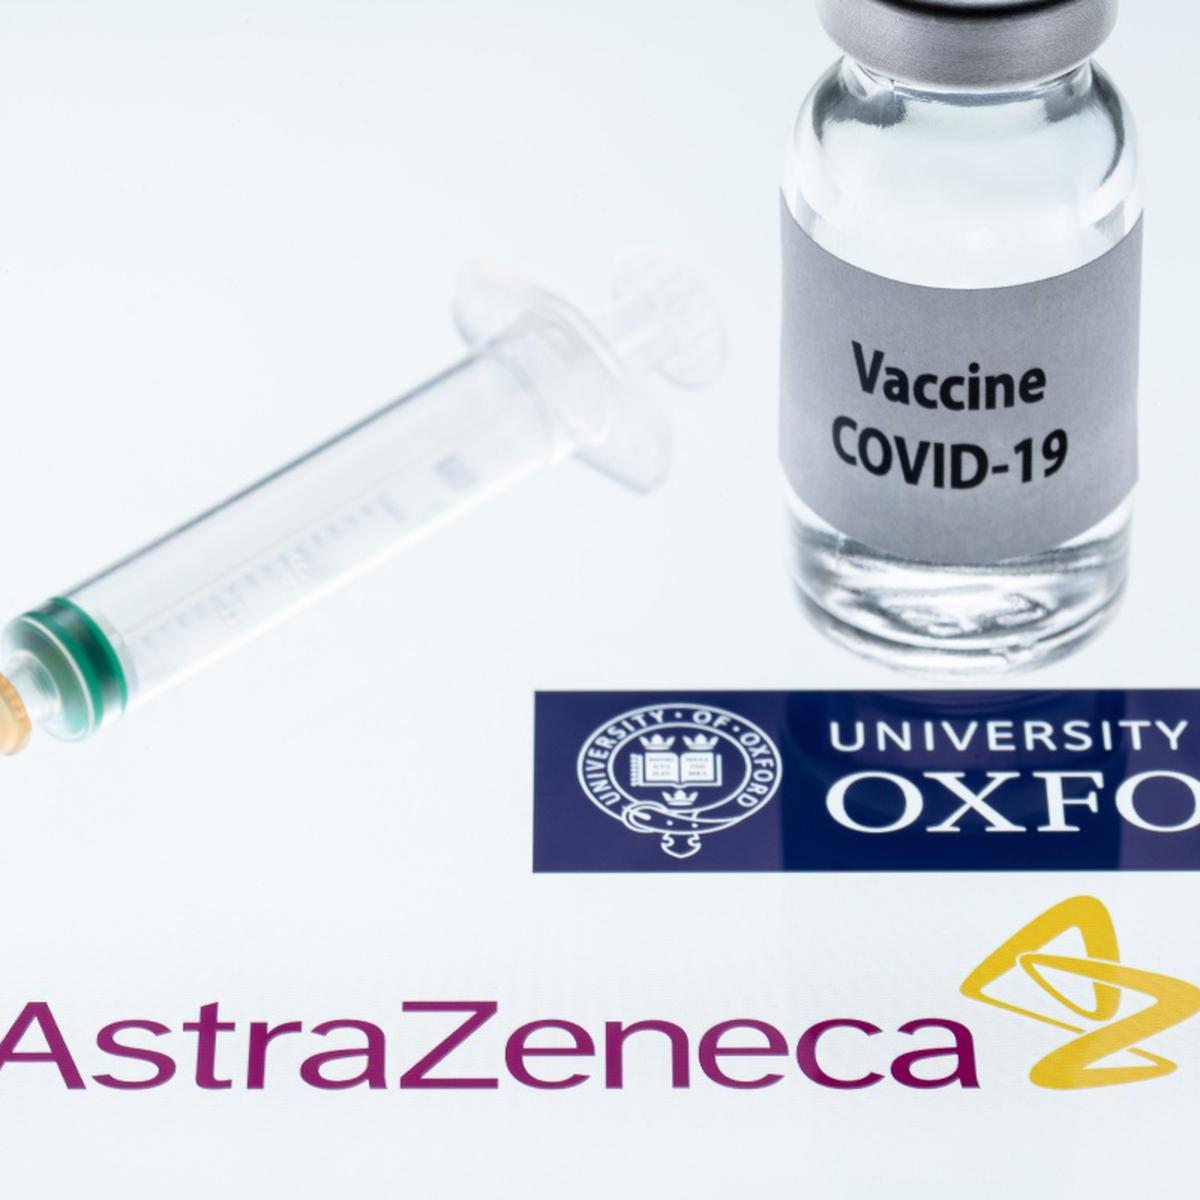 Estas Son Las Caracteristicas De La Vacuna De Astrazeneca Oxford Para El Covid 19 Mundo Gestion